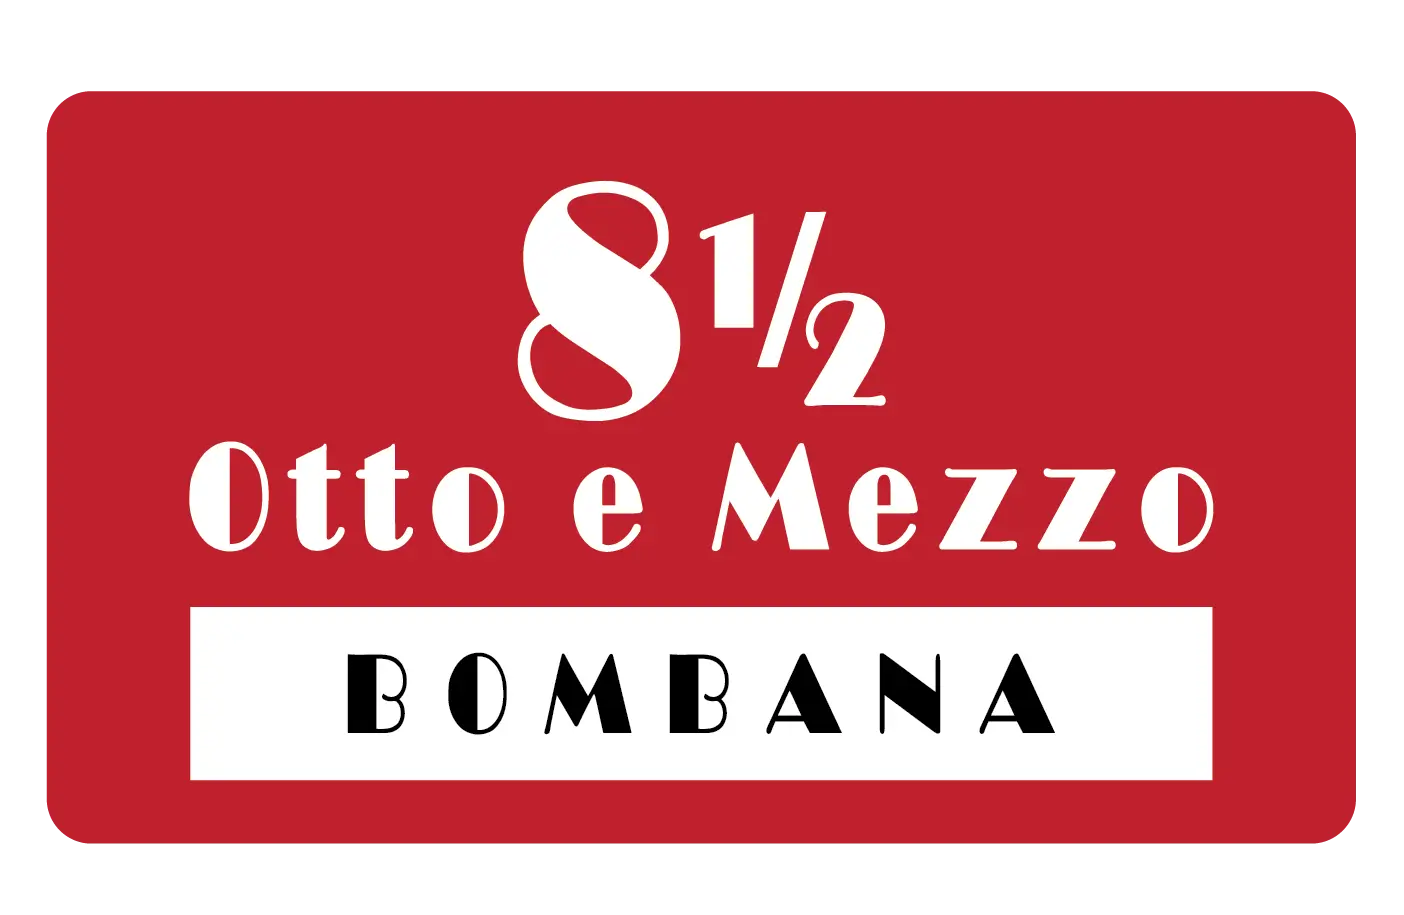 8 1_2 Otto e Mezzo Logo-01